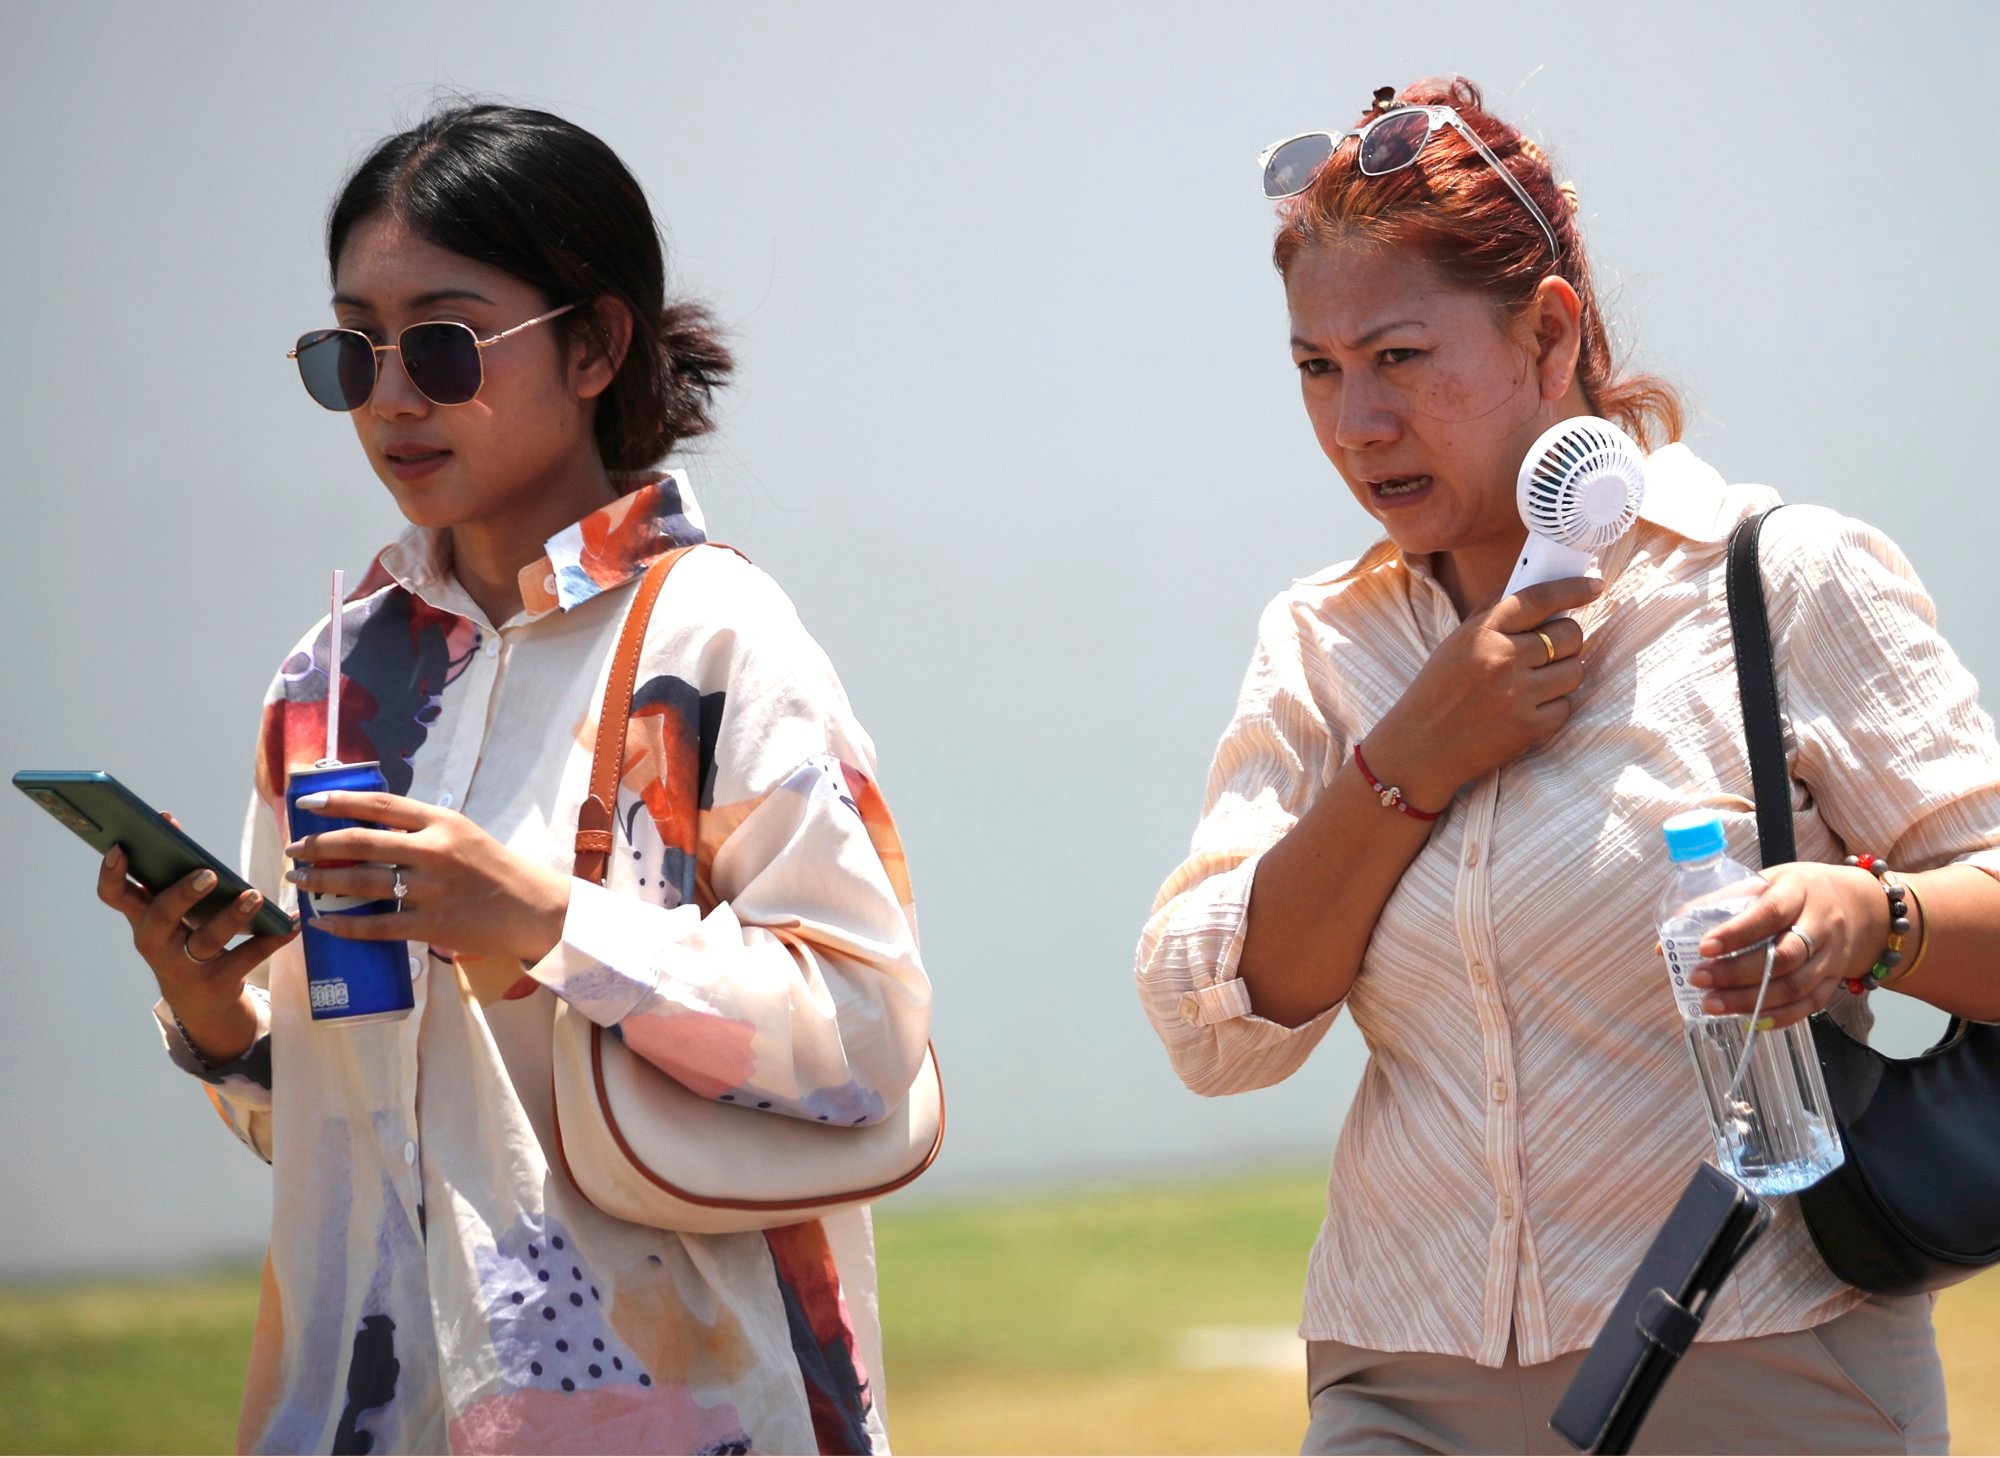 Ola de calor en el sudeste asiático: el índice de calor de Tailandia supera los 52 grados mientras Filipinas corre el riesgo de sobrecargar los sistemas eléctricos